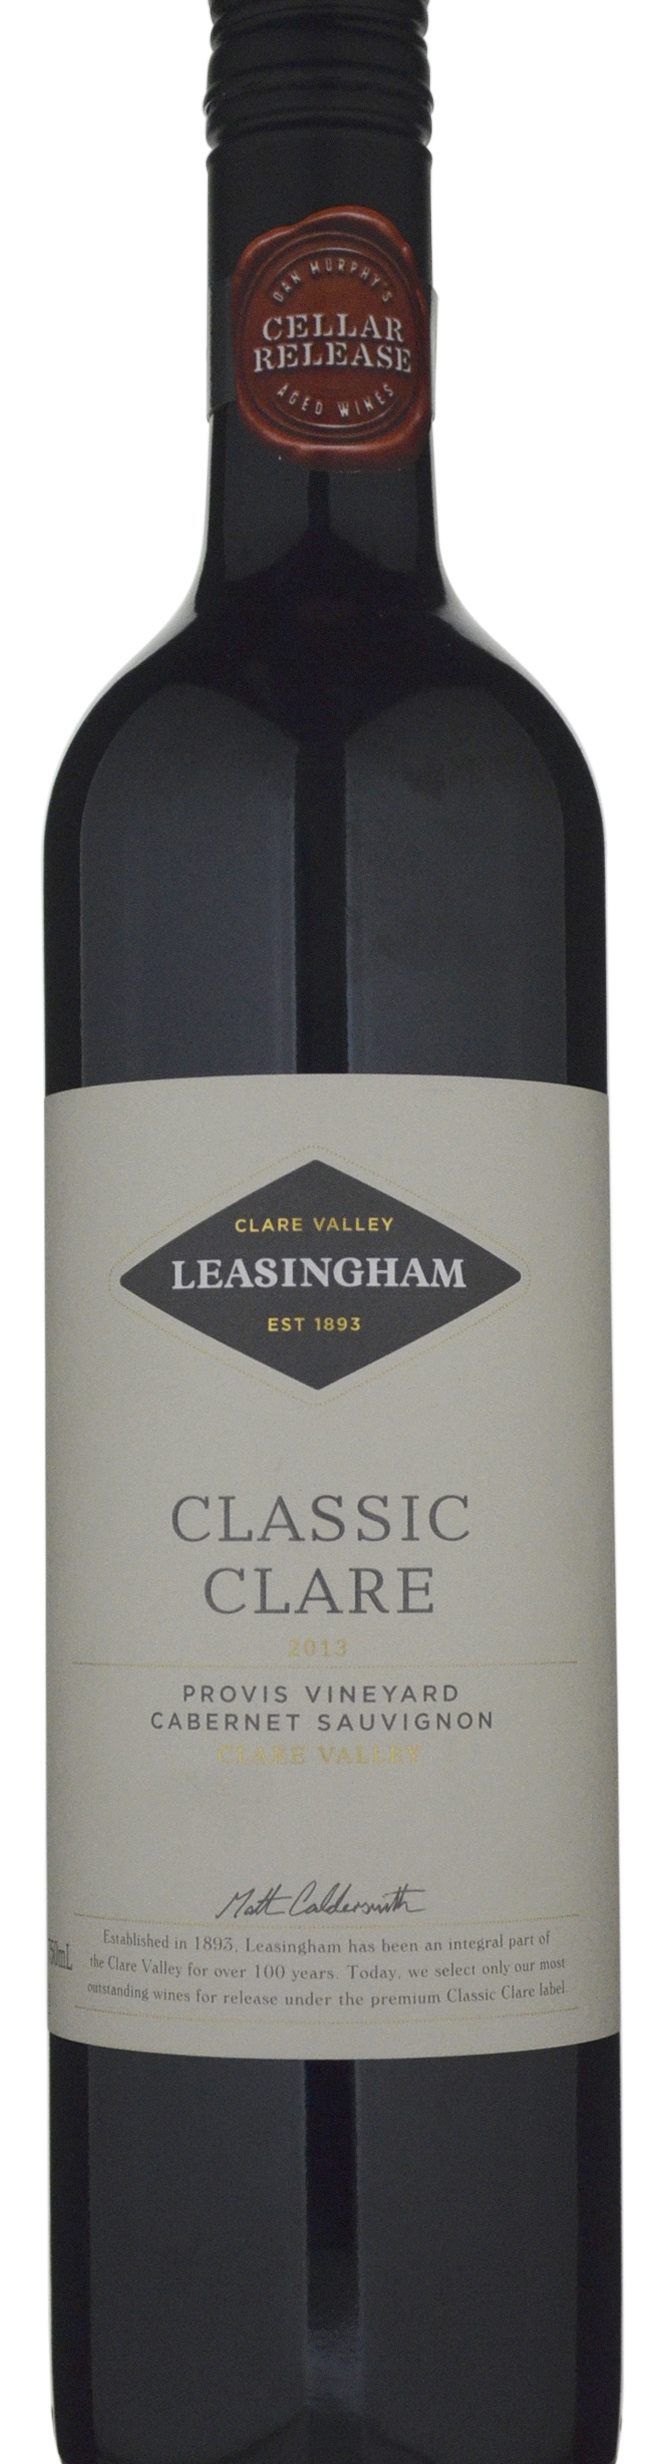 Leasingham Classic Clare Provis Vineyard Cabernet Sauvignon 2013